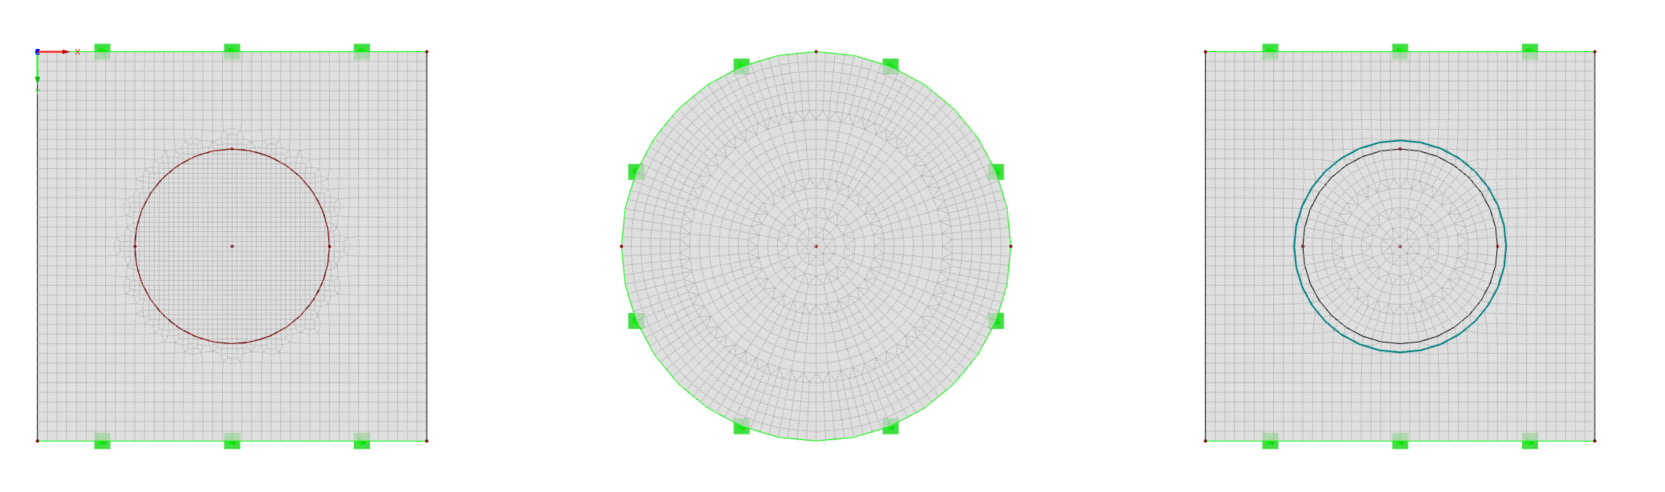 Géométrie de base avec un maillage radial